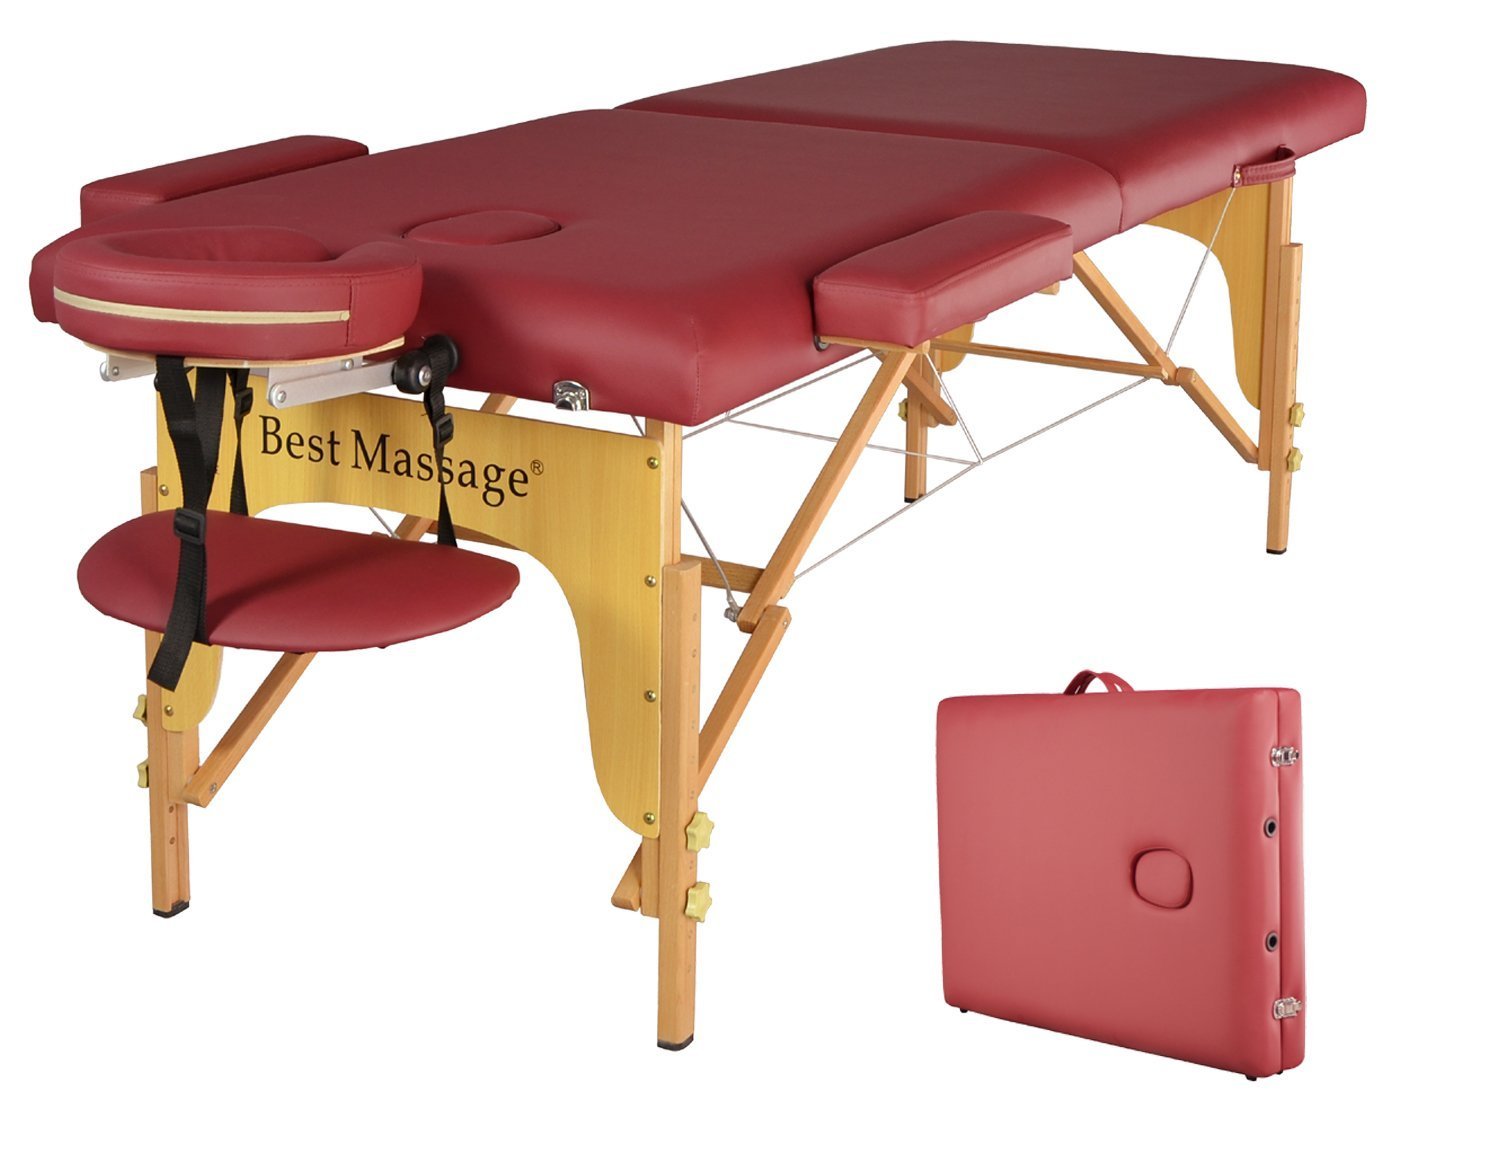 Массажный стол с отверстием. Массажный стол Ferrox via Crevada 85. Redcord массажный стол. Массажный стол best massage. Массажный стол с отверстием для живота.